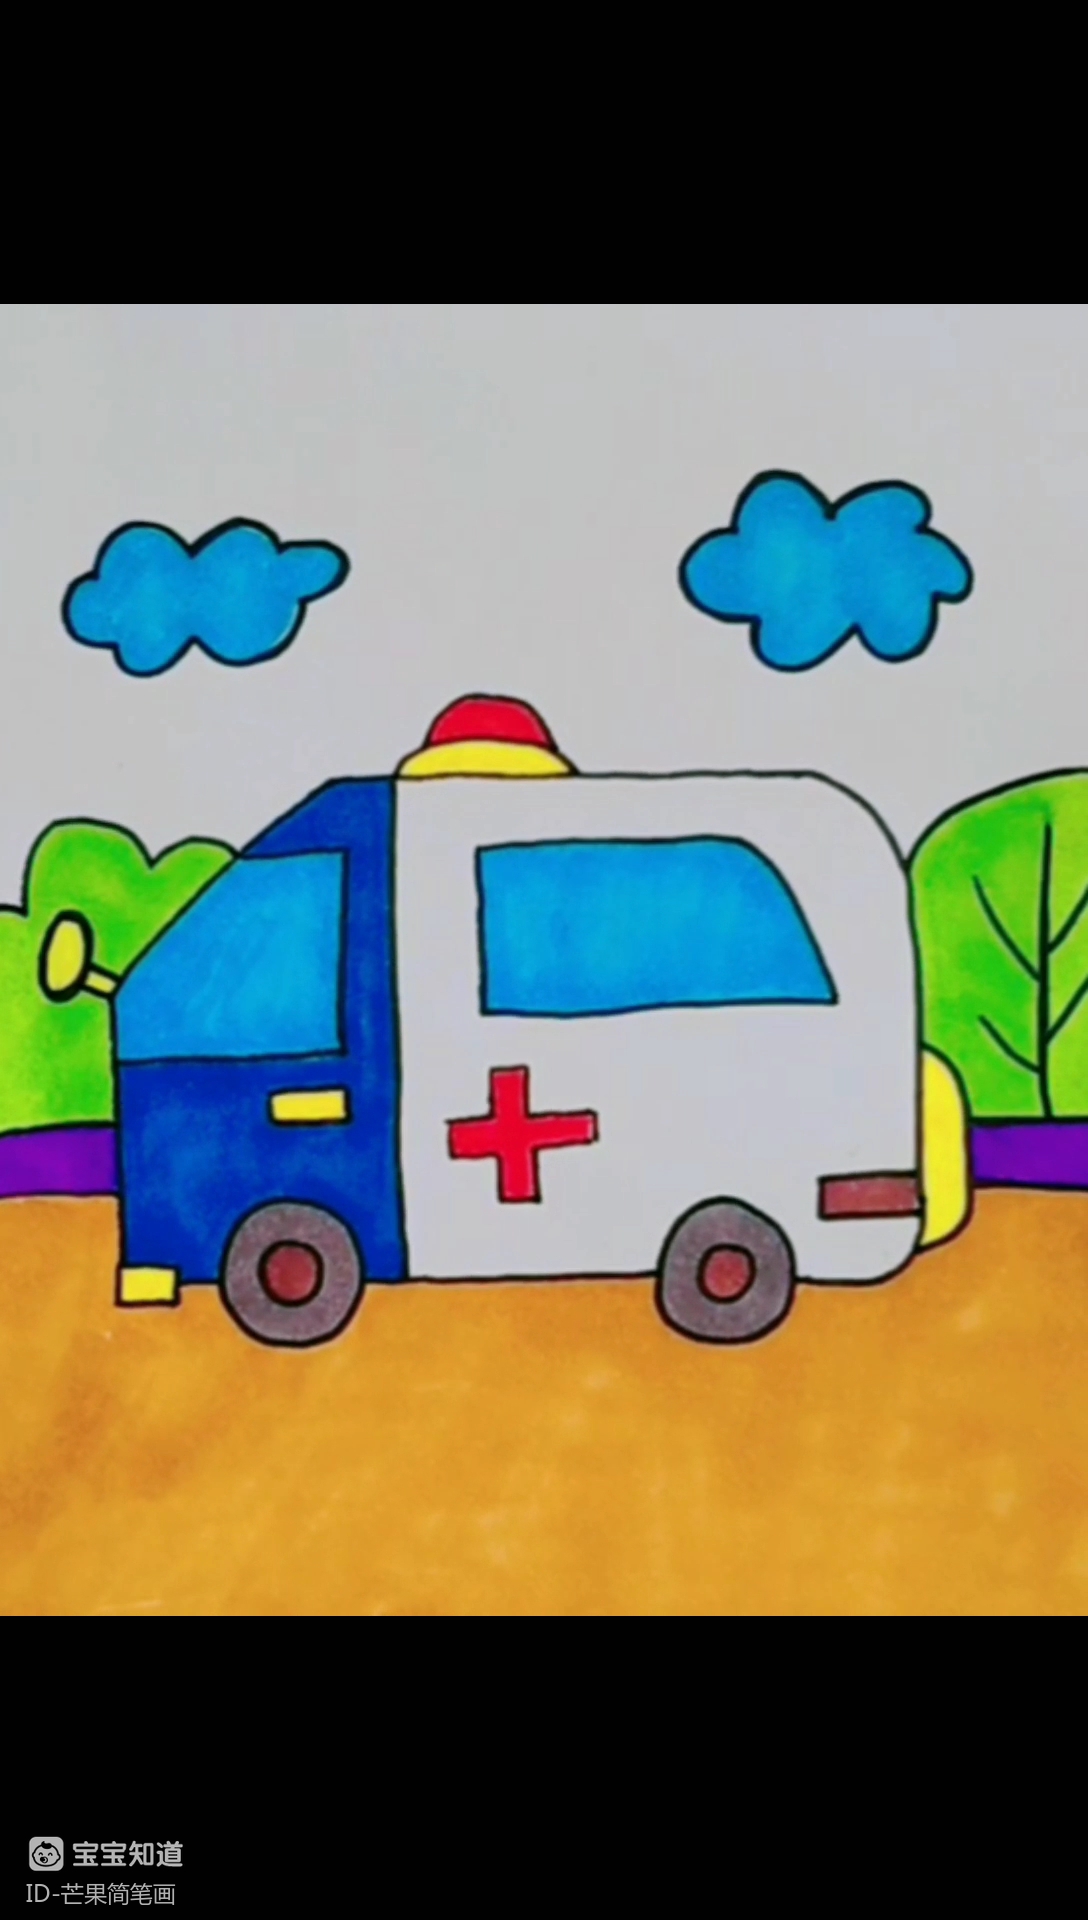 很简单的一款救护车简笔画哦,快快教宝贝画起来